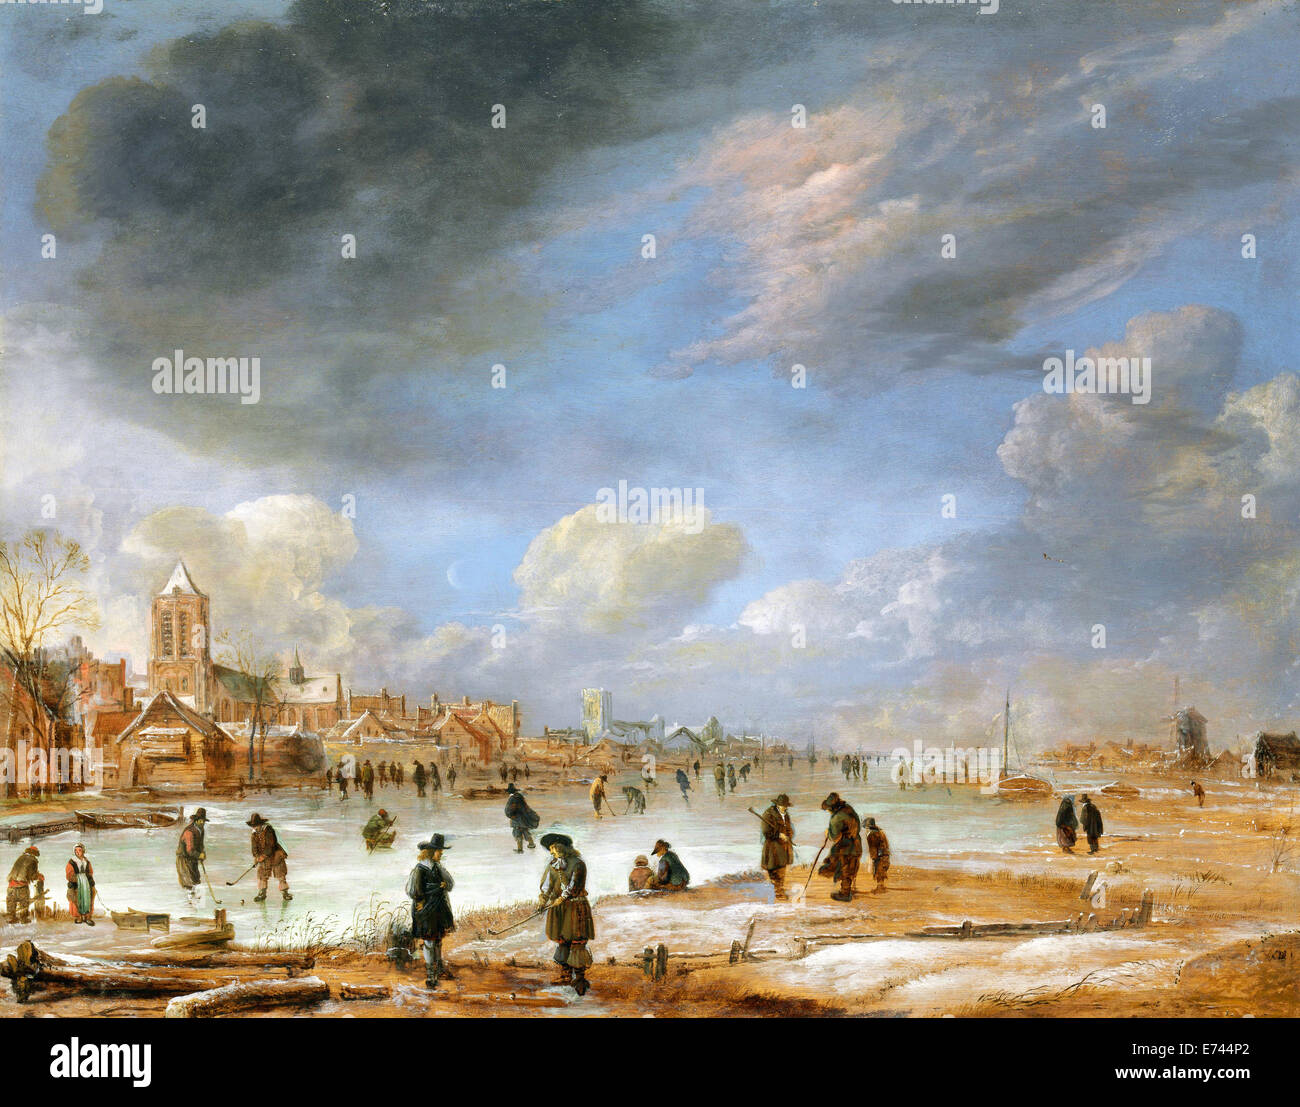 River scene in winter - by Aert van der Neer, 1655 - 1660 Stock Photo